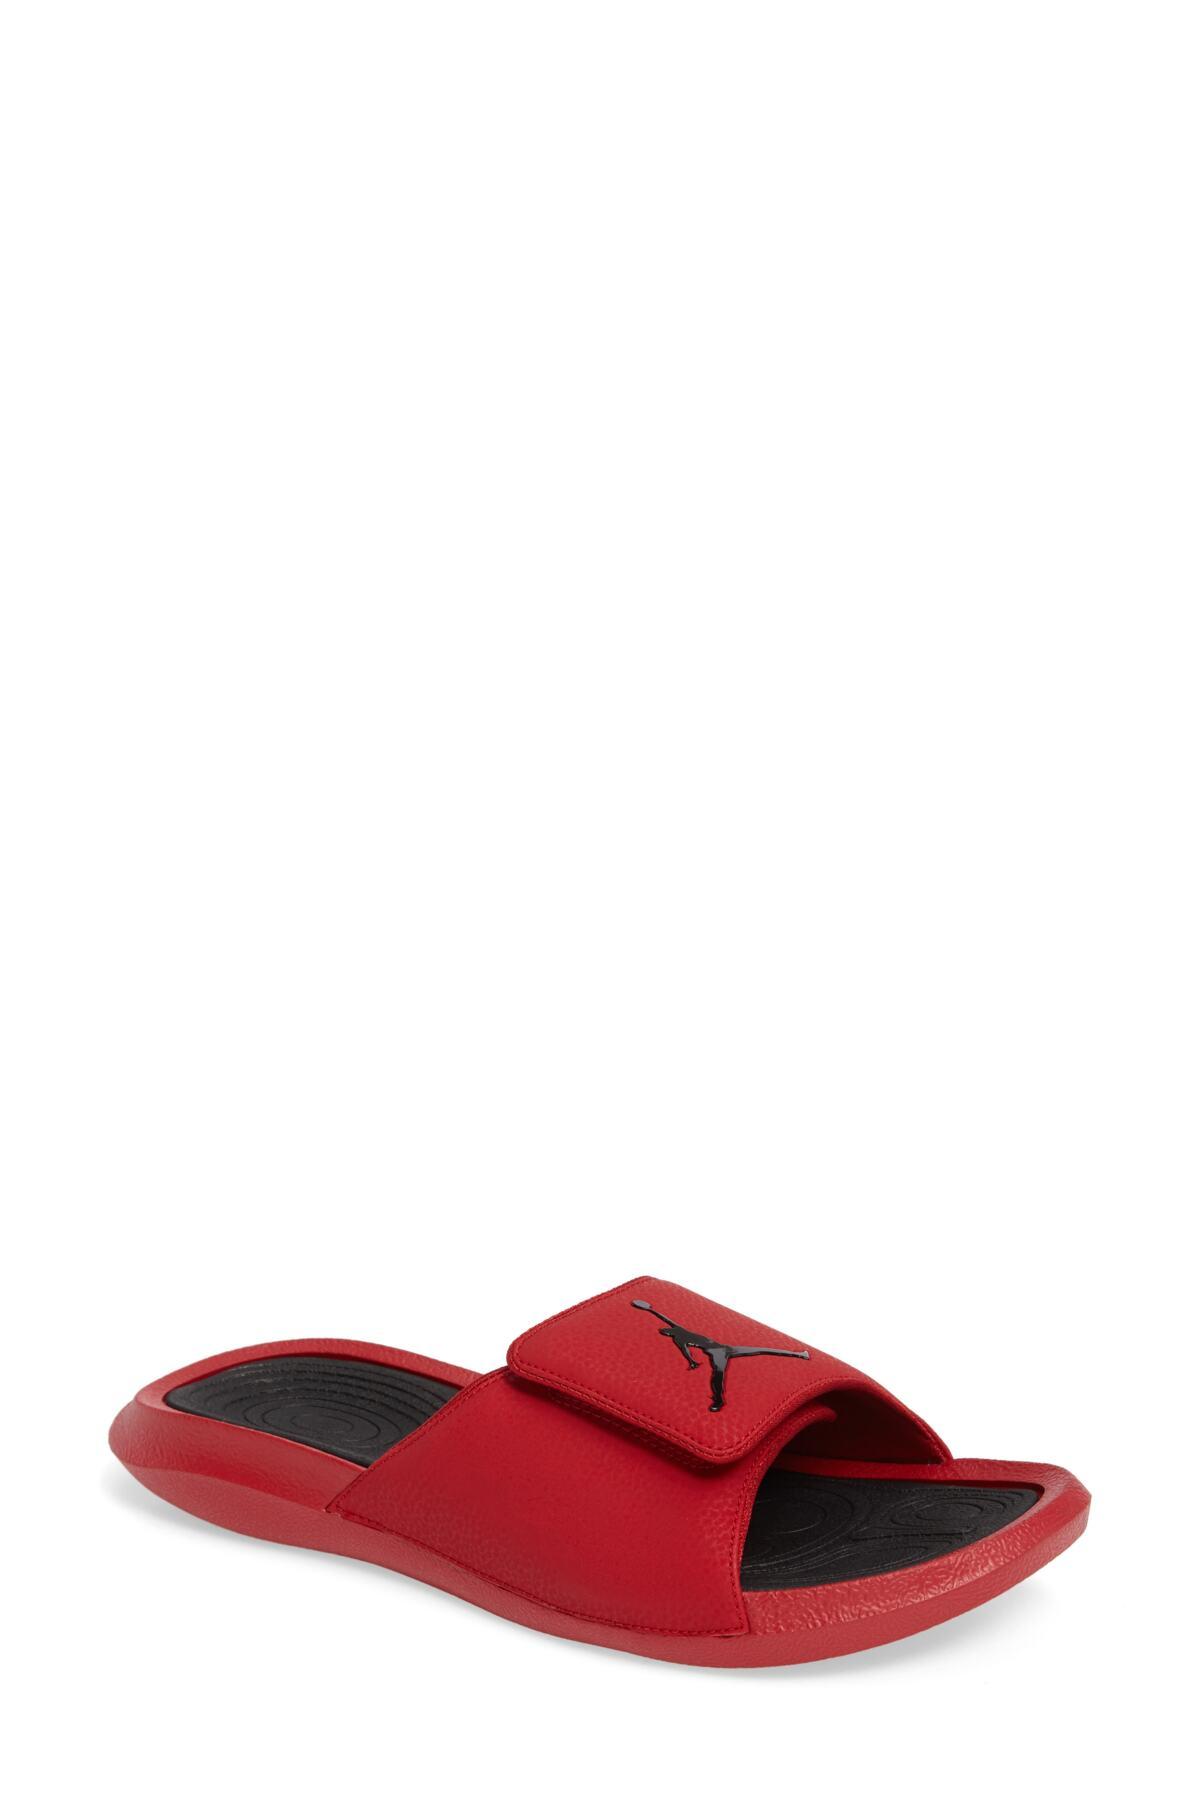 Nike Synthetic Jordan Hydro 6 Slide Sandal (men) for Men - Lyst